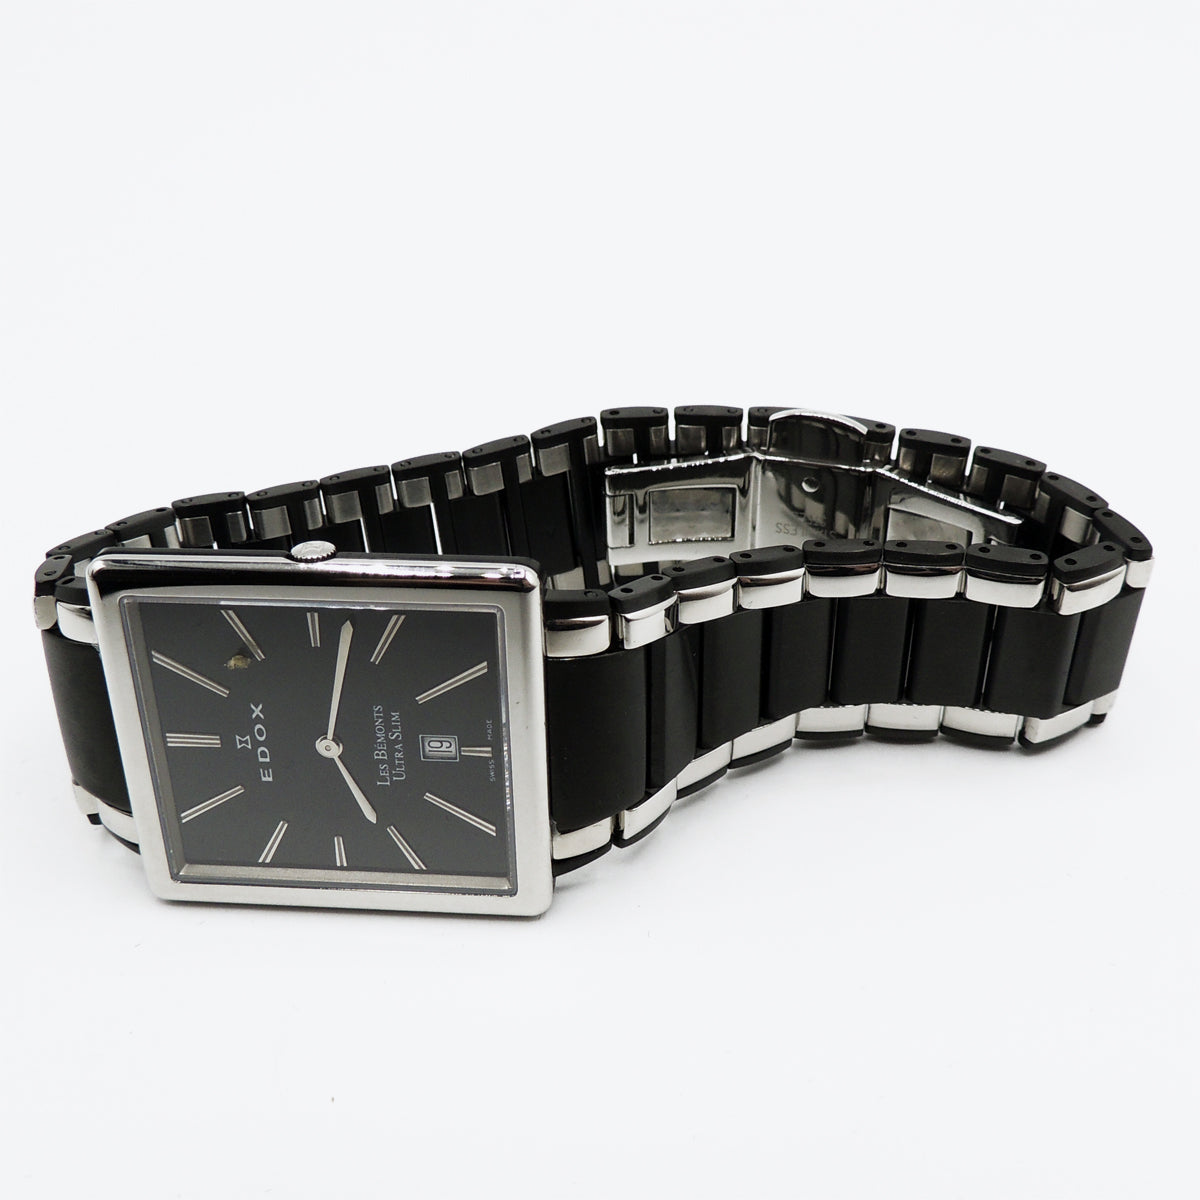 Edox Men's 27031 357N NIN Les Bemonts Rectangular Ultra Slim Watch